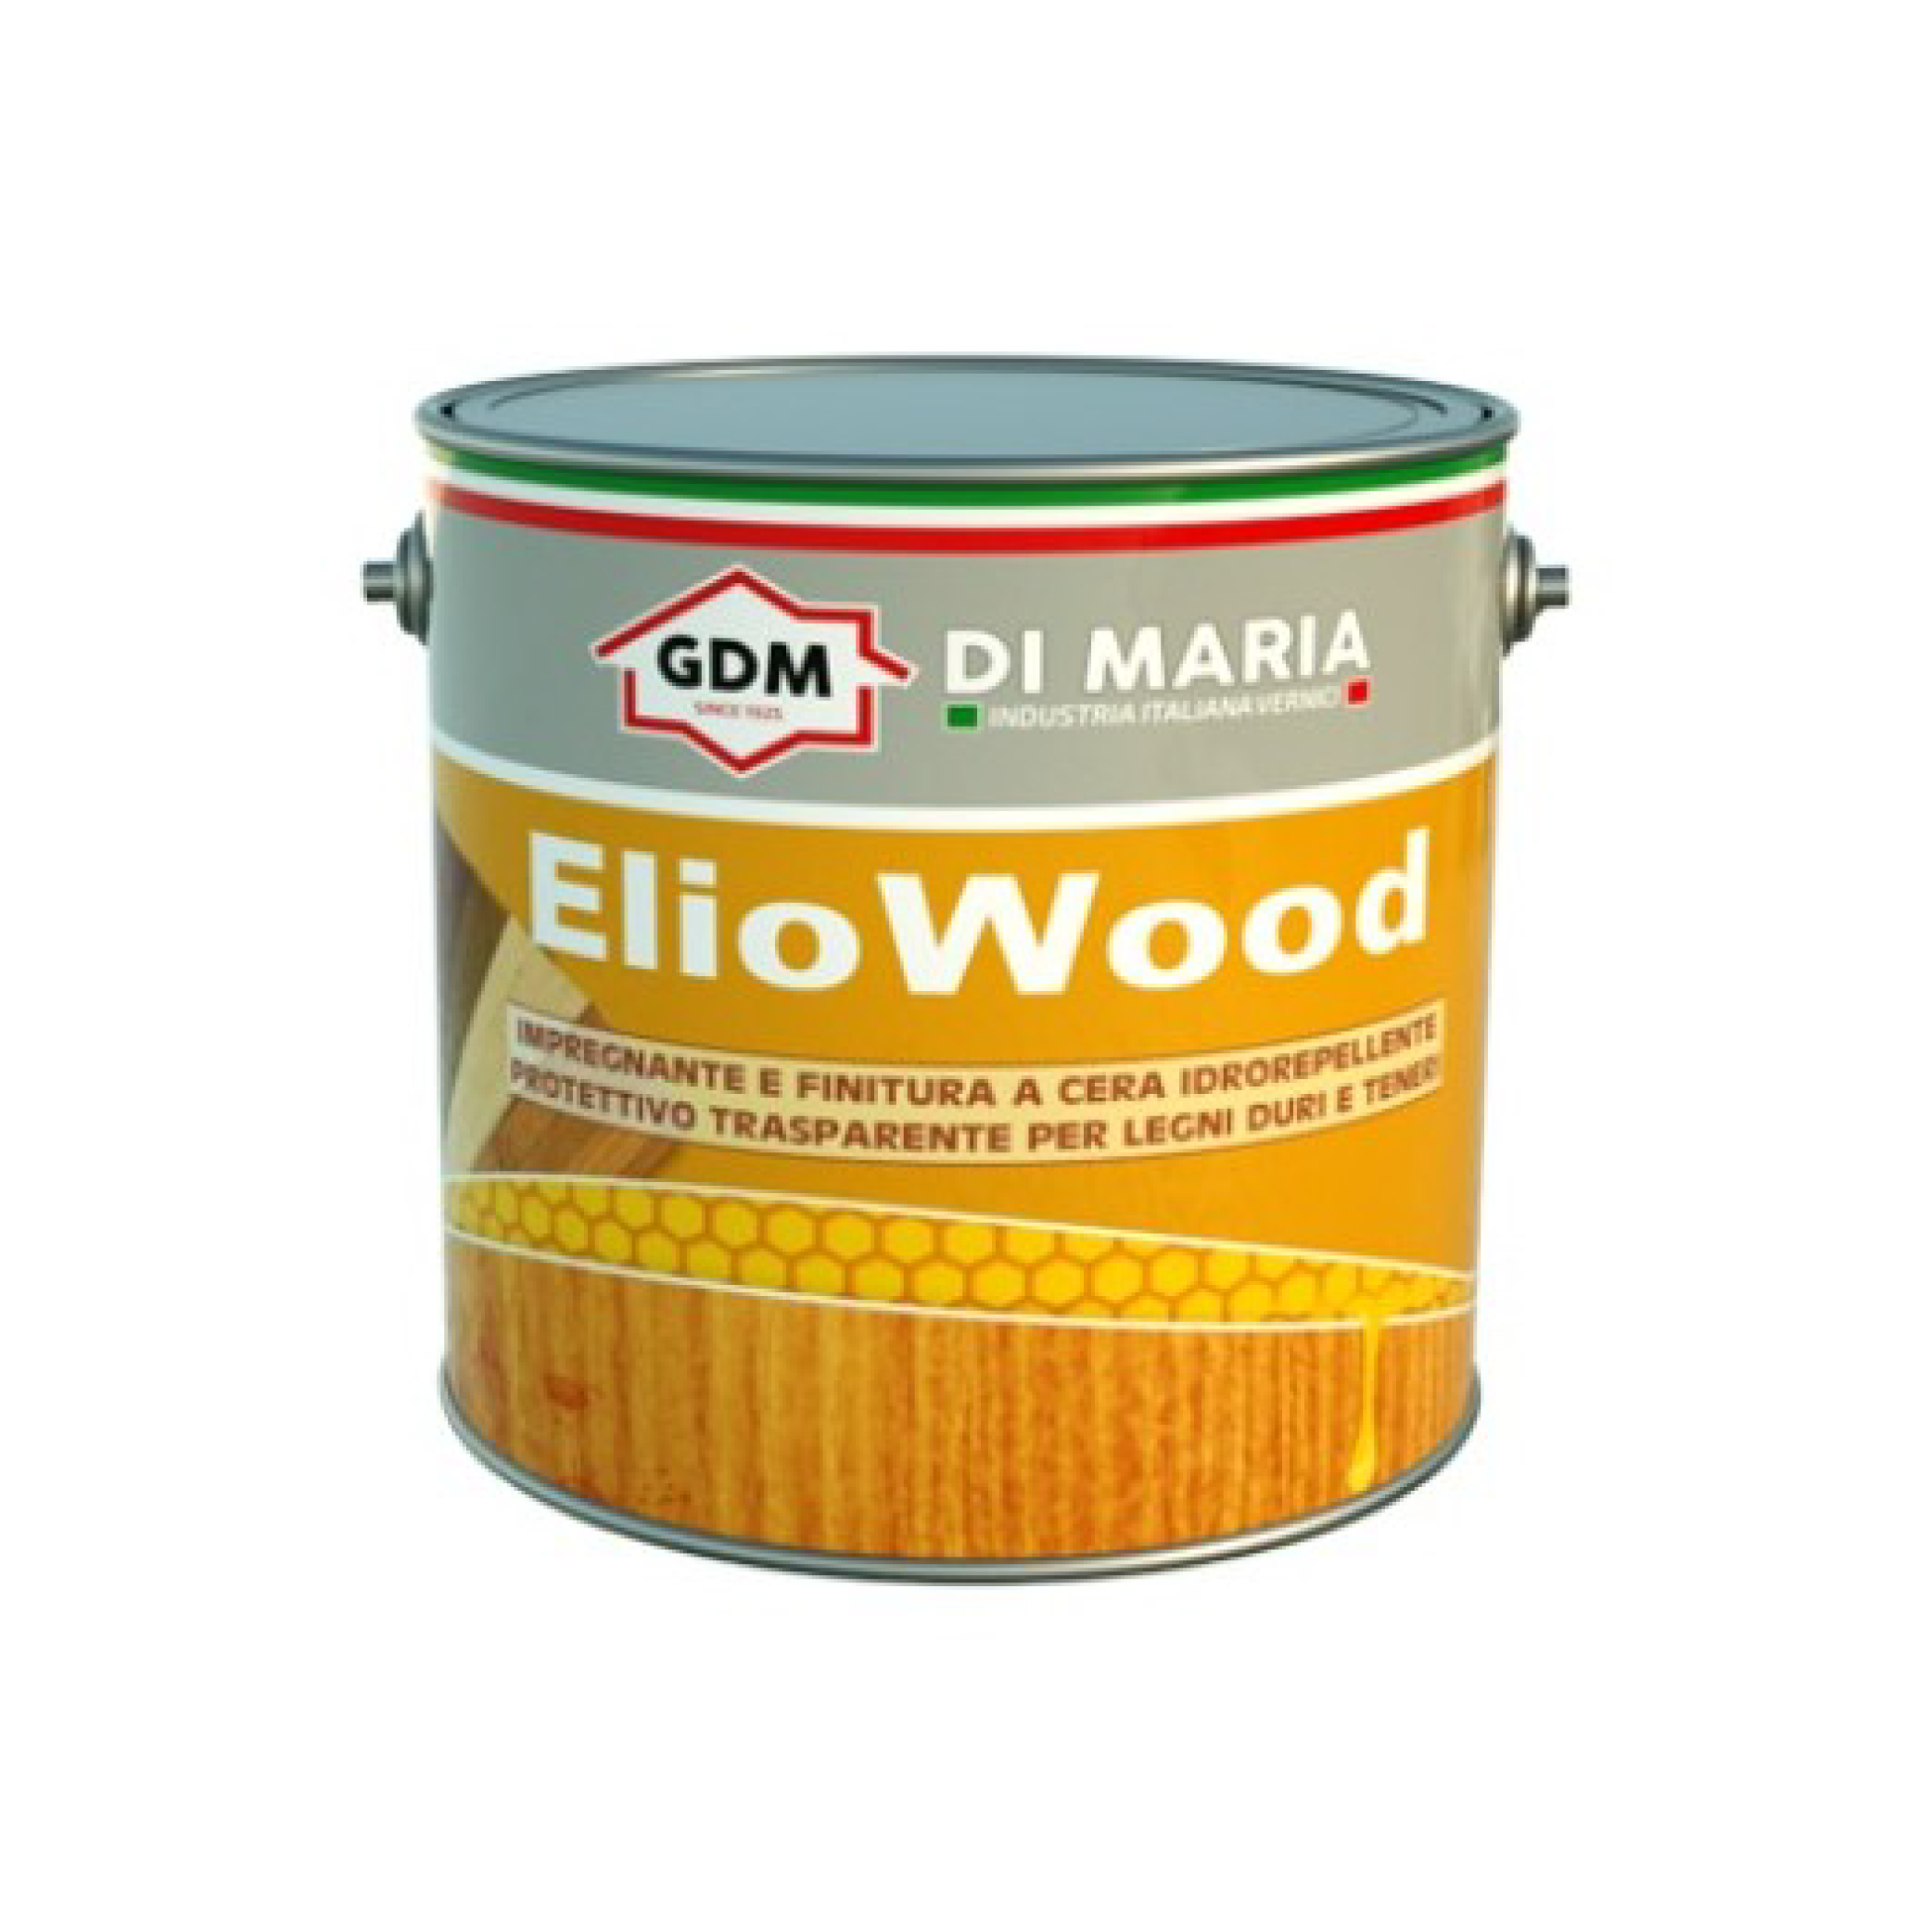 ELIOWOOD - GDM - COLORI - 0,750L